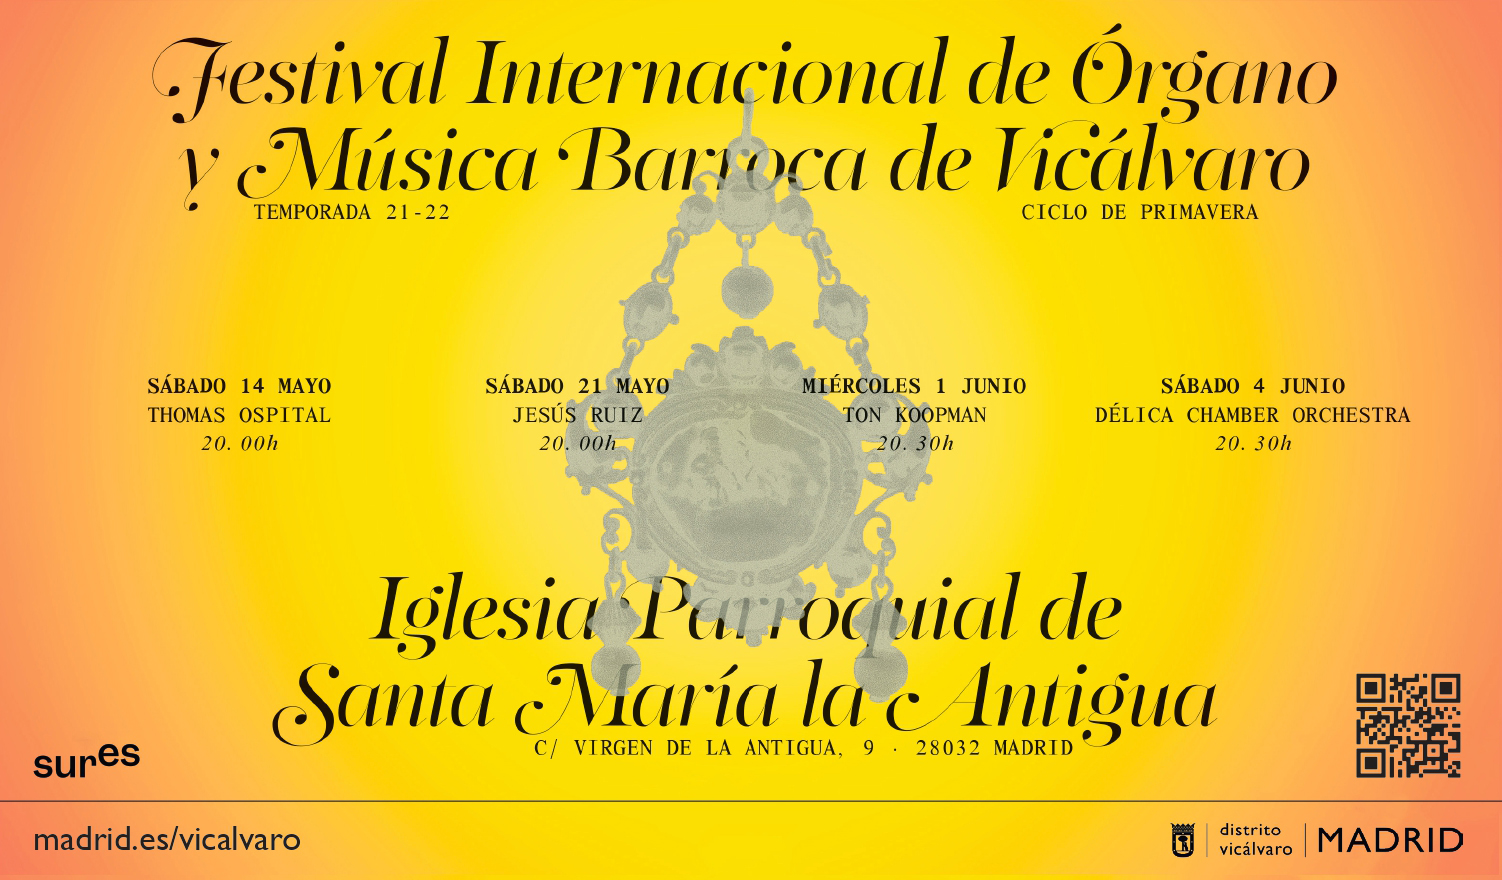 Cartel del Festival Internacional de Órgano y Música Barroca de Vicálvaro